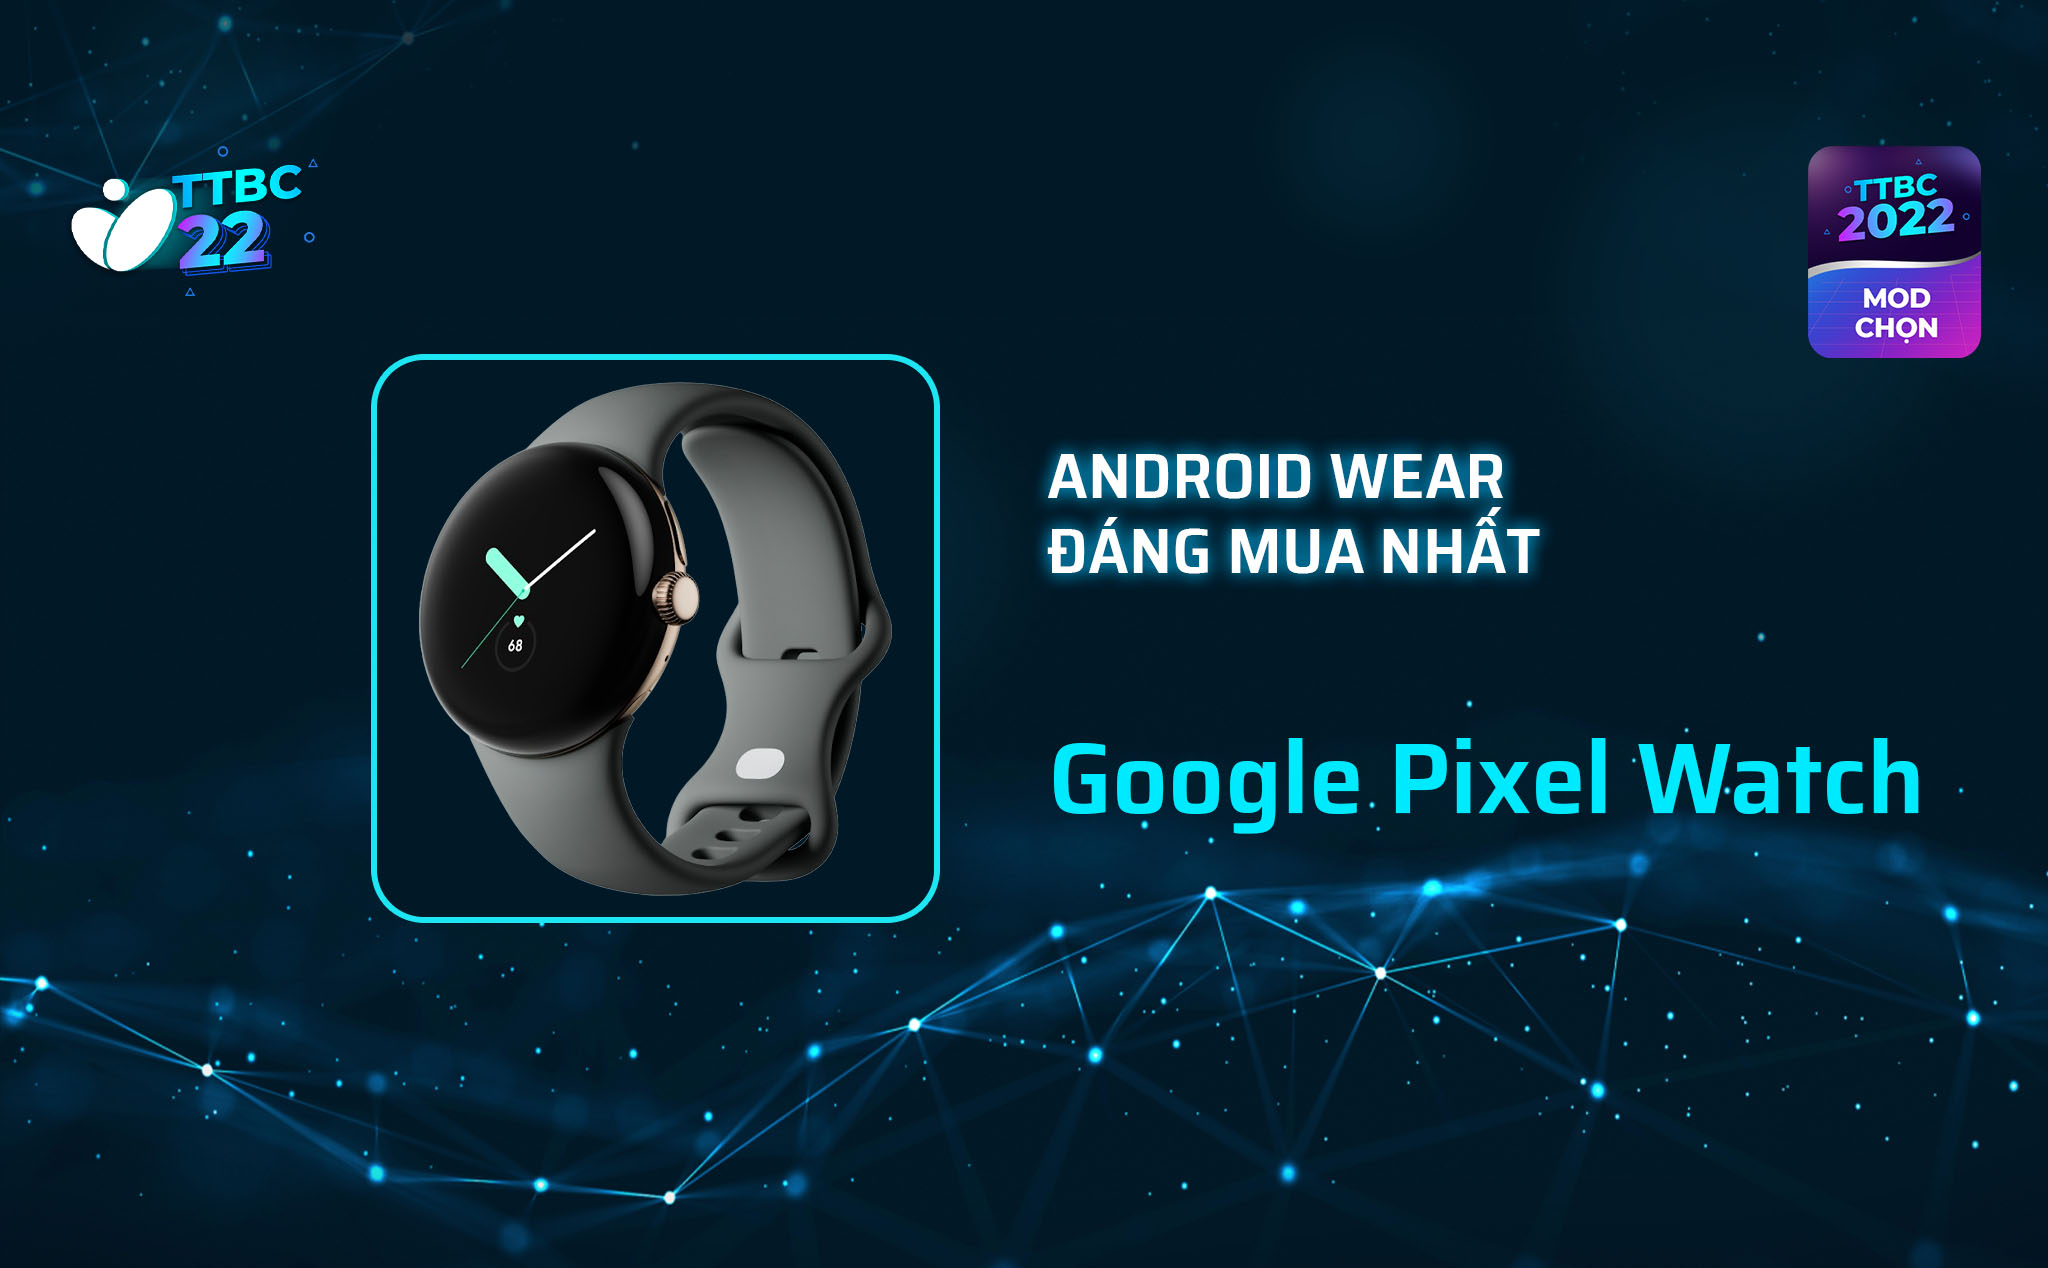 TTBC22 - Mod Choice: Android Wear đáng mua hất chính là Pixel Watch